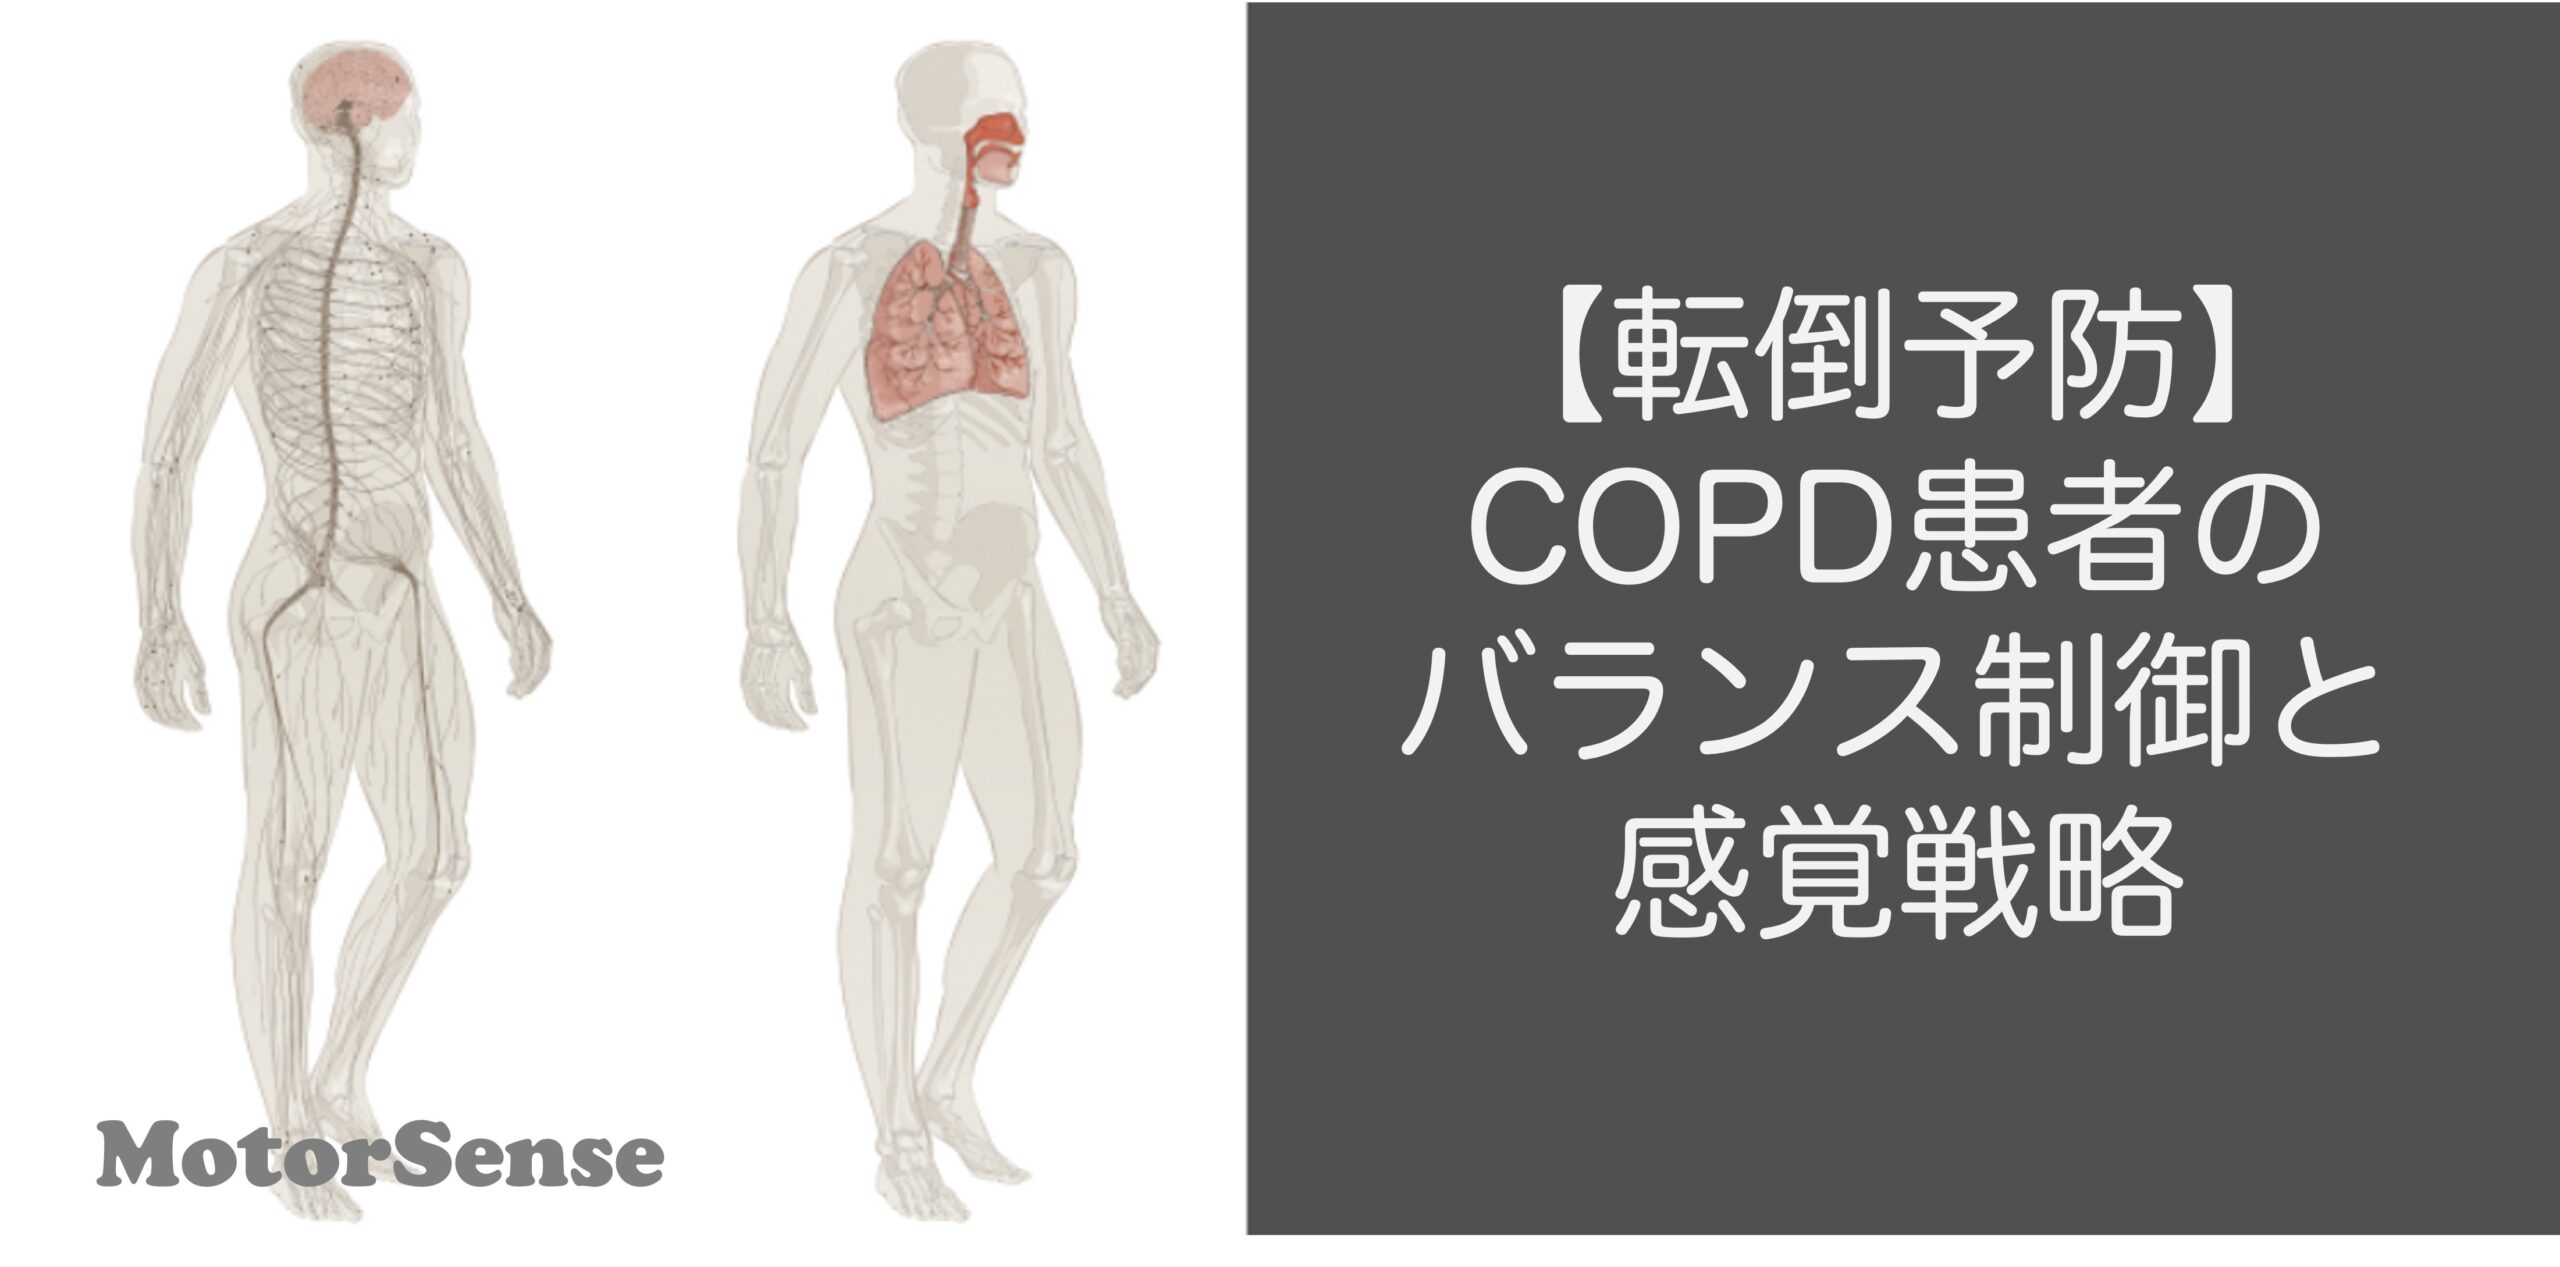 【転倒予防】COPD患者のバランス制御と感覚戦略